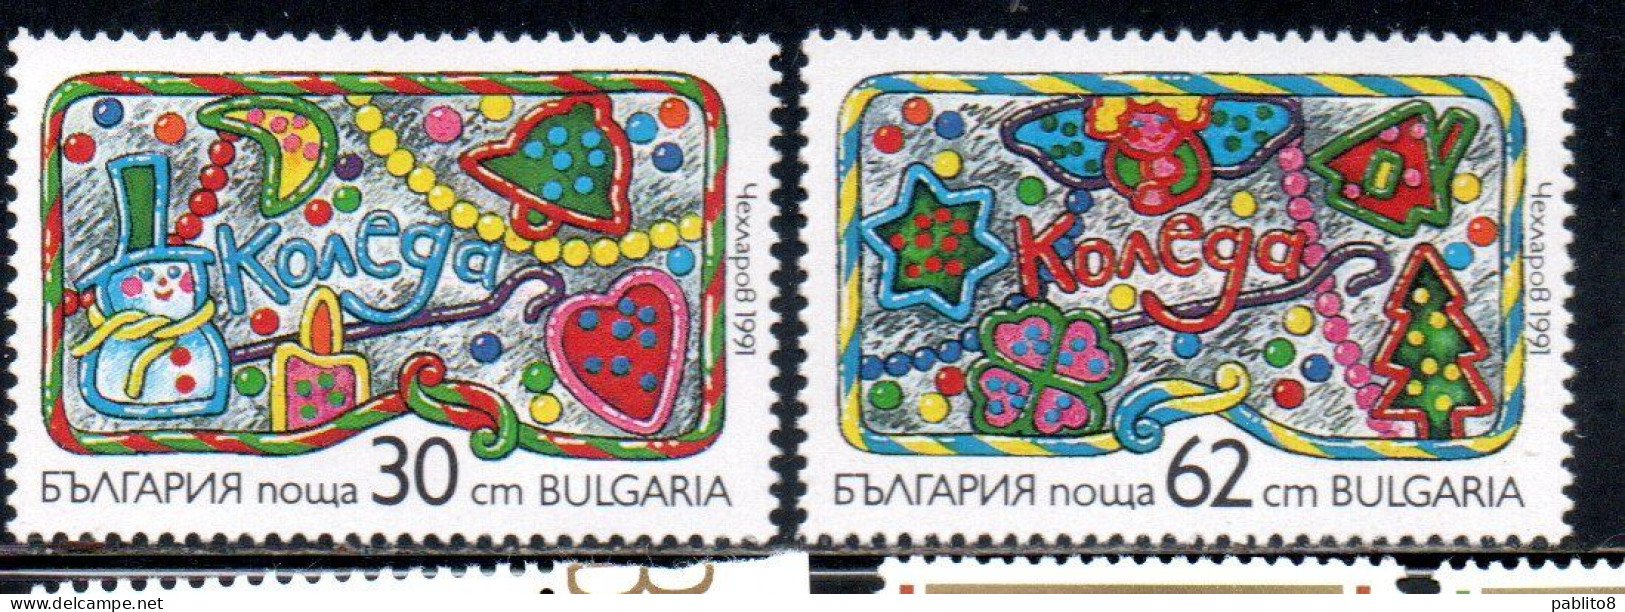 BULGARIA BULGARIE BULGARIEN 1991 CHRISTMAS NATALE NOEL WEIHNACHTEN NAVIDAD COMPLETE SET SERIE COMPLETA MNH - Ongebruikt